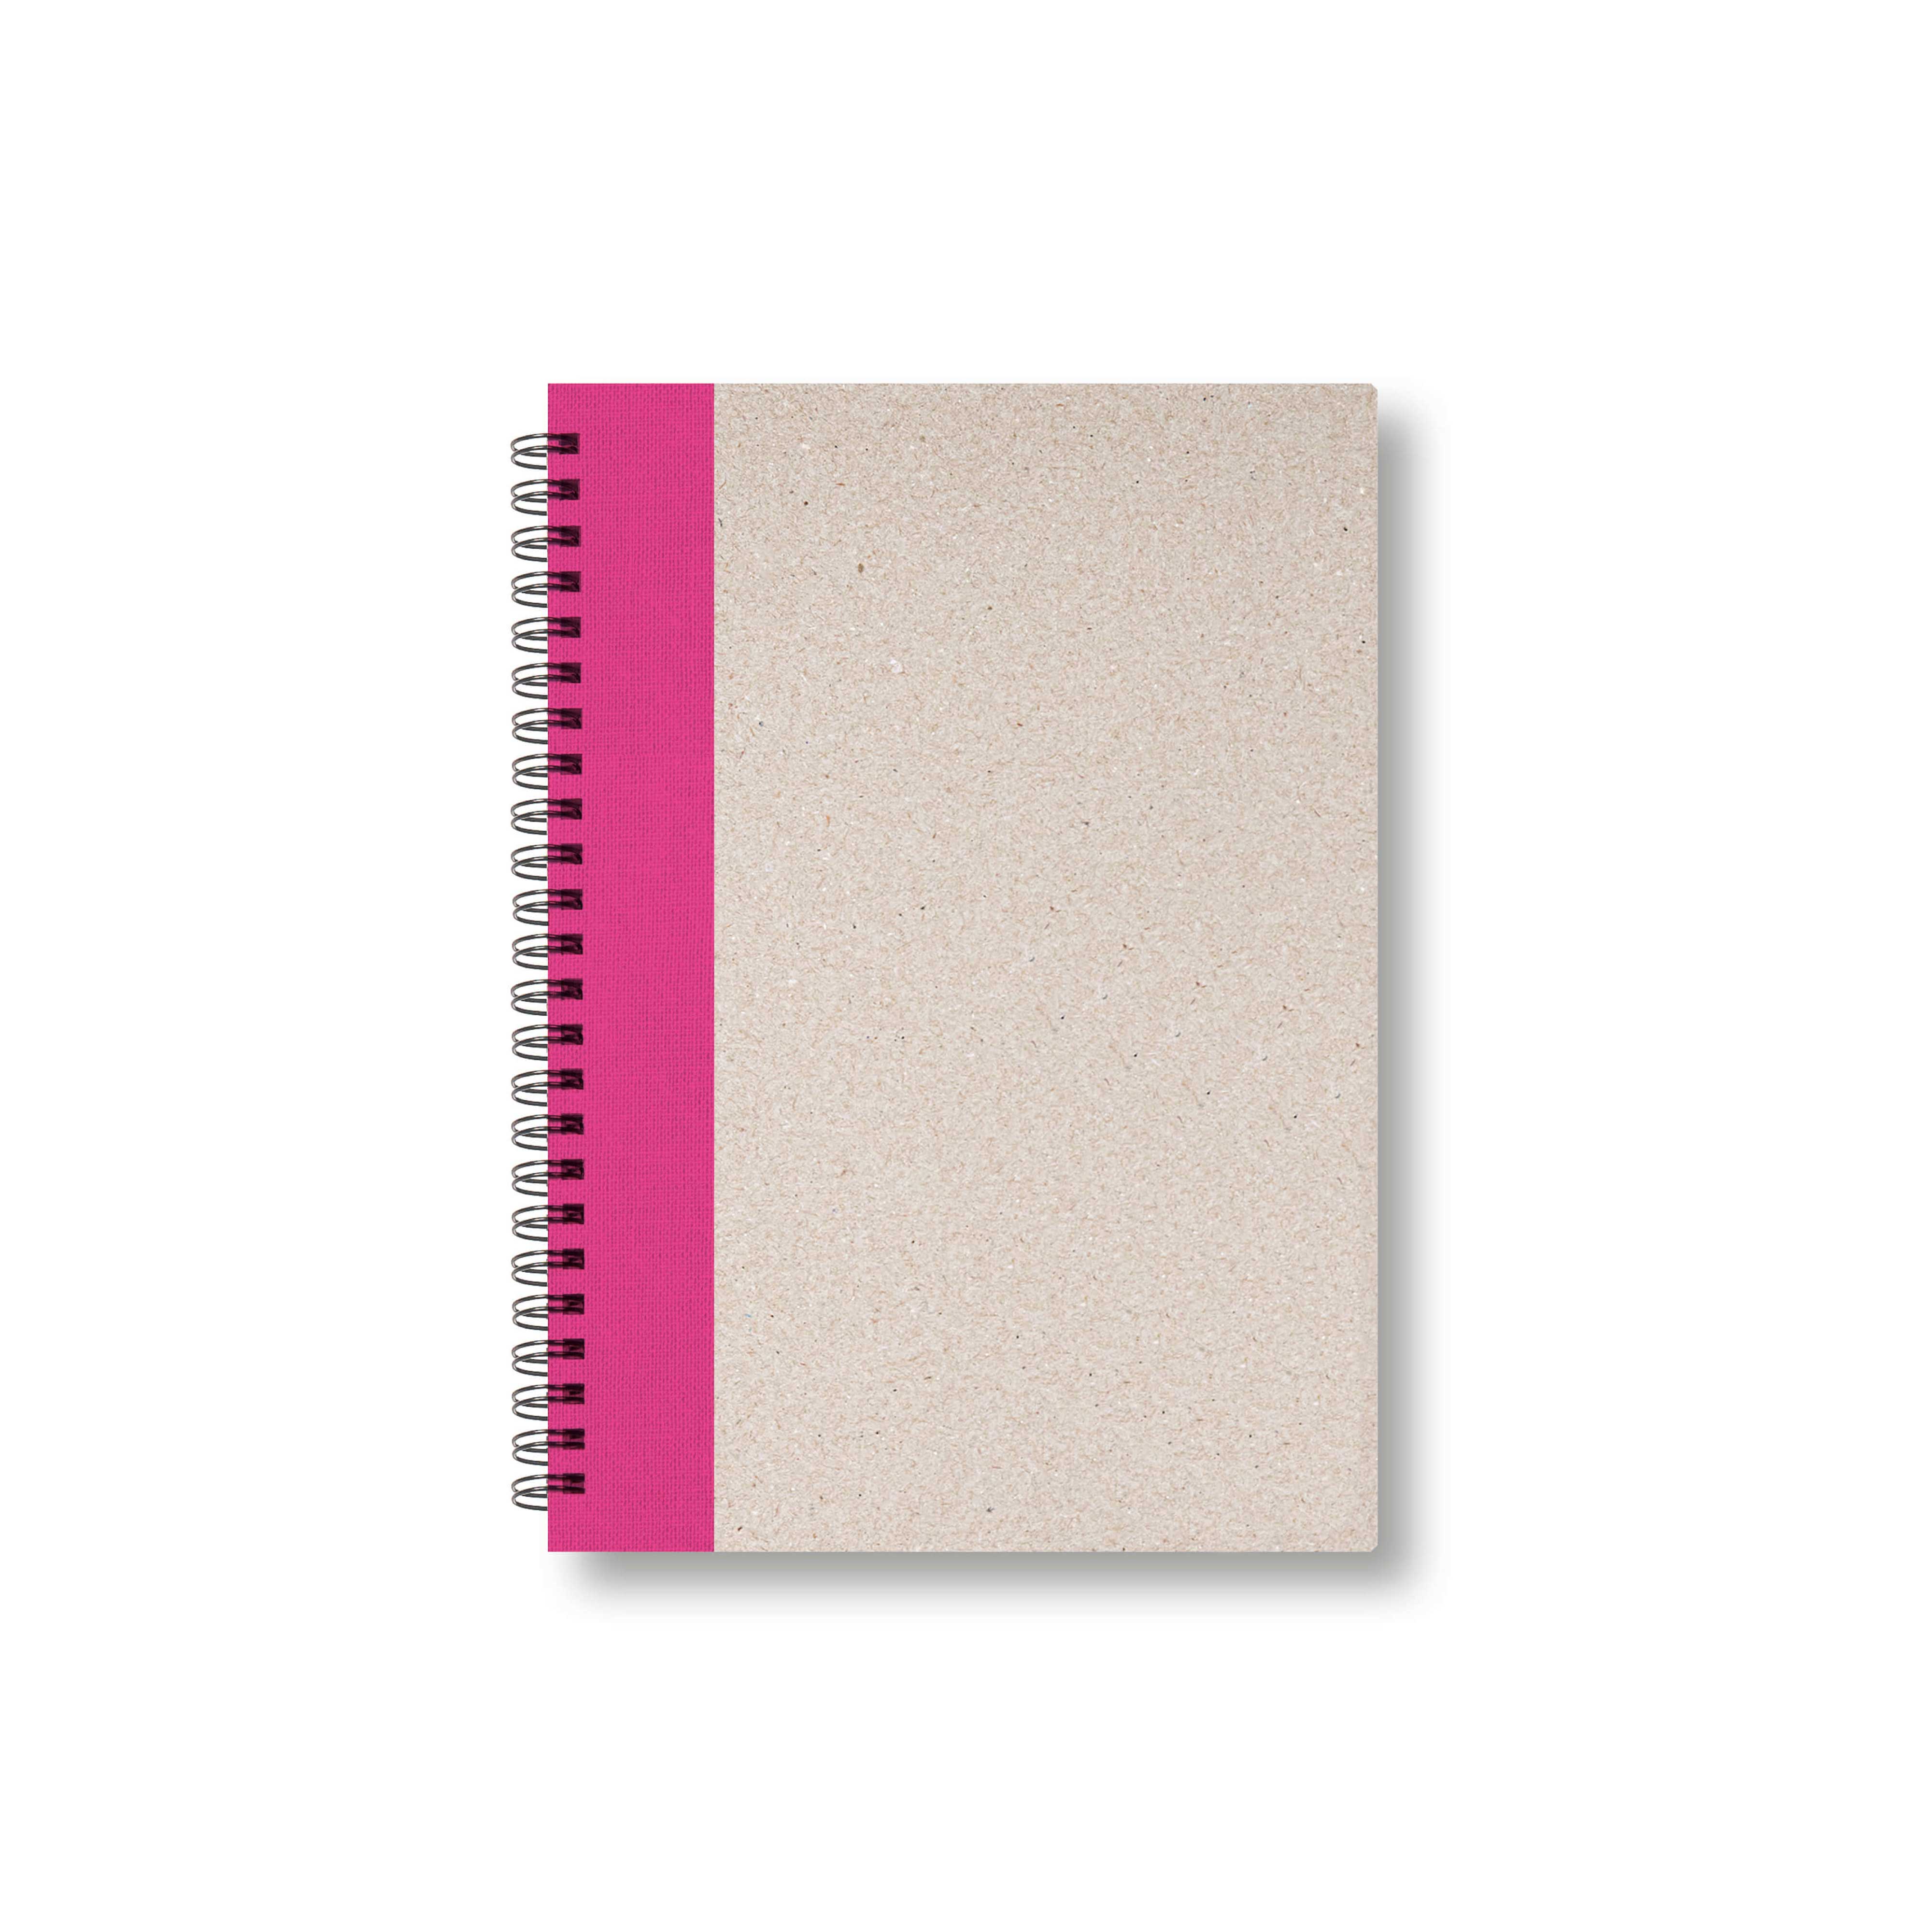 BOBO Zápisník, B6, čistý, růžový, konfiguruj si obálku